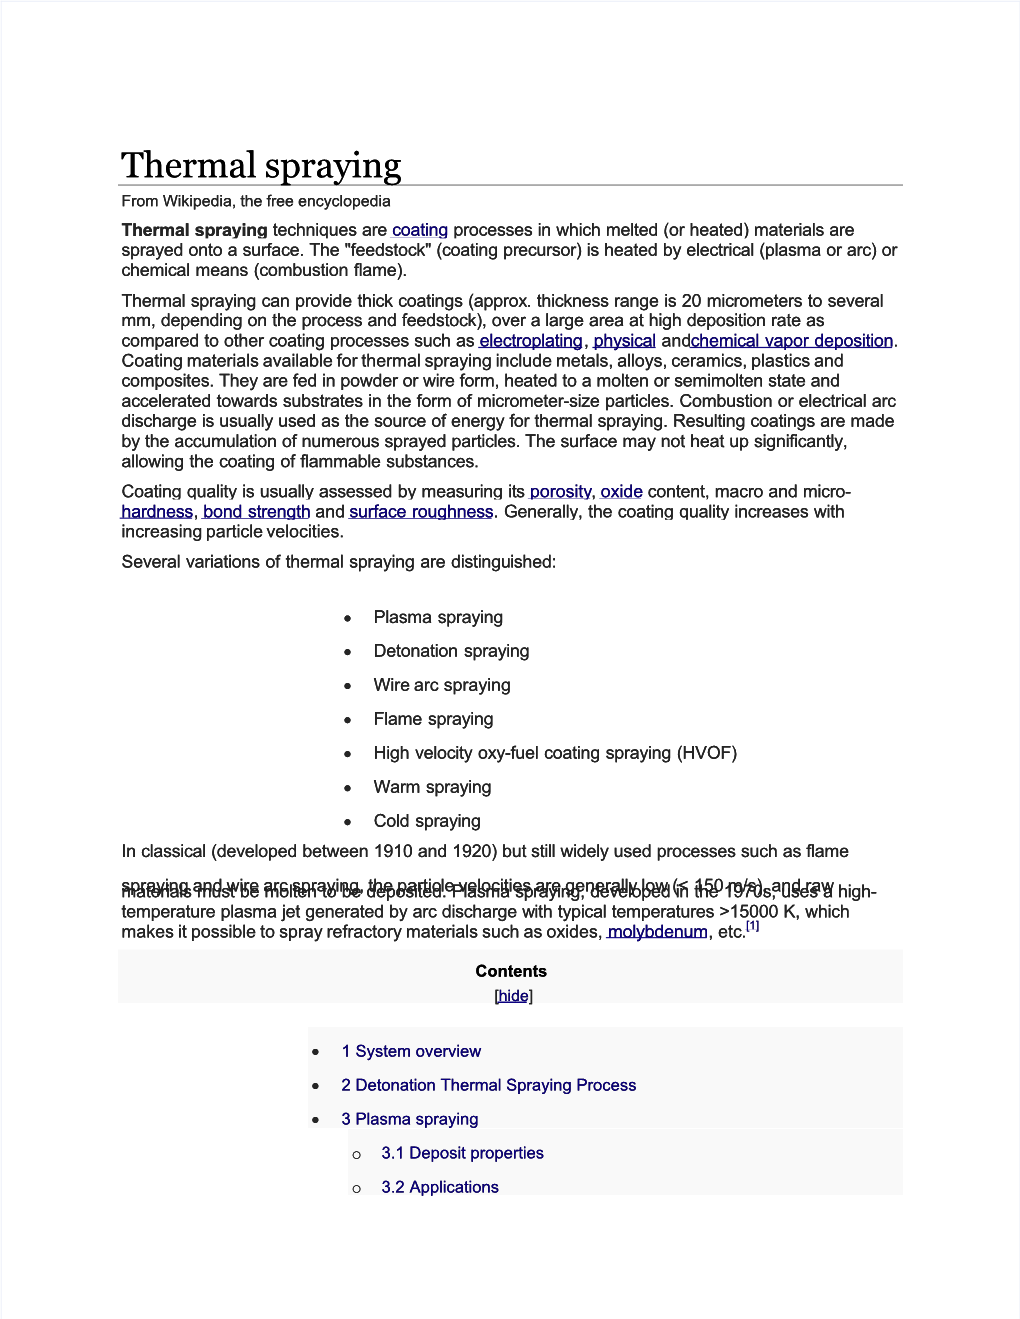 Thermal Spraying